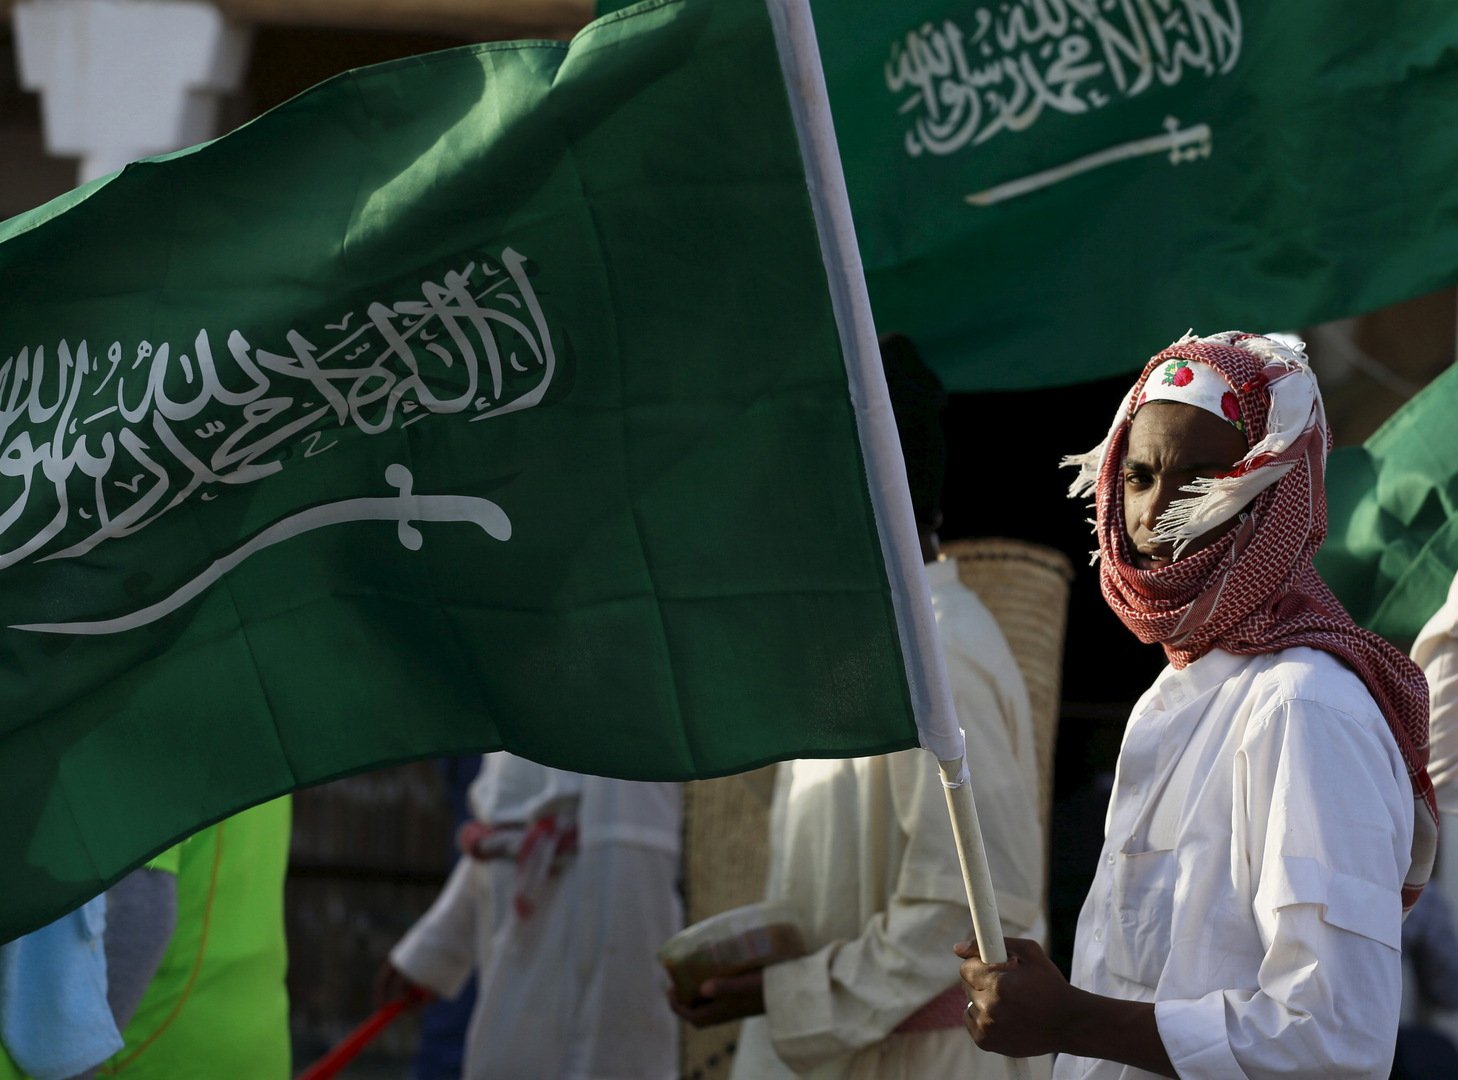 السعودية: القضية الفلسطينية قضيتنا الأولى ونرفض موقف واشنطن حول المستوطنات